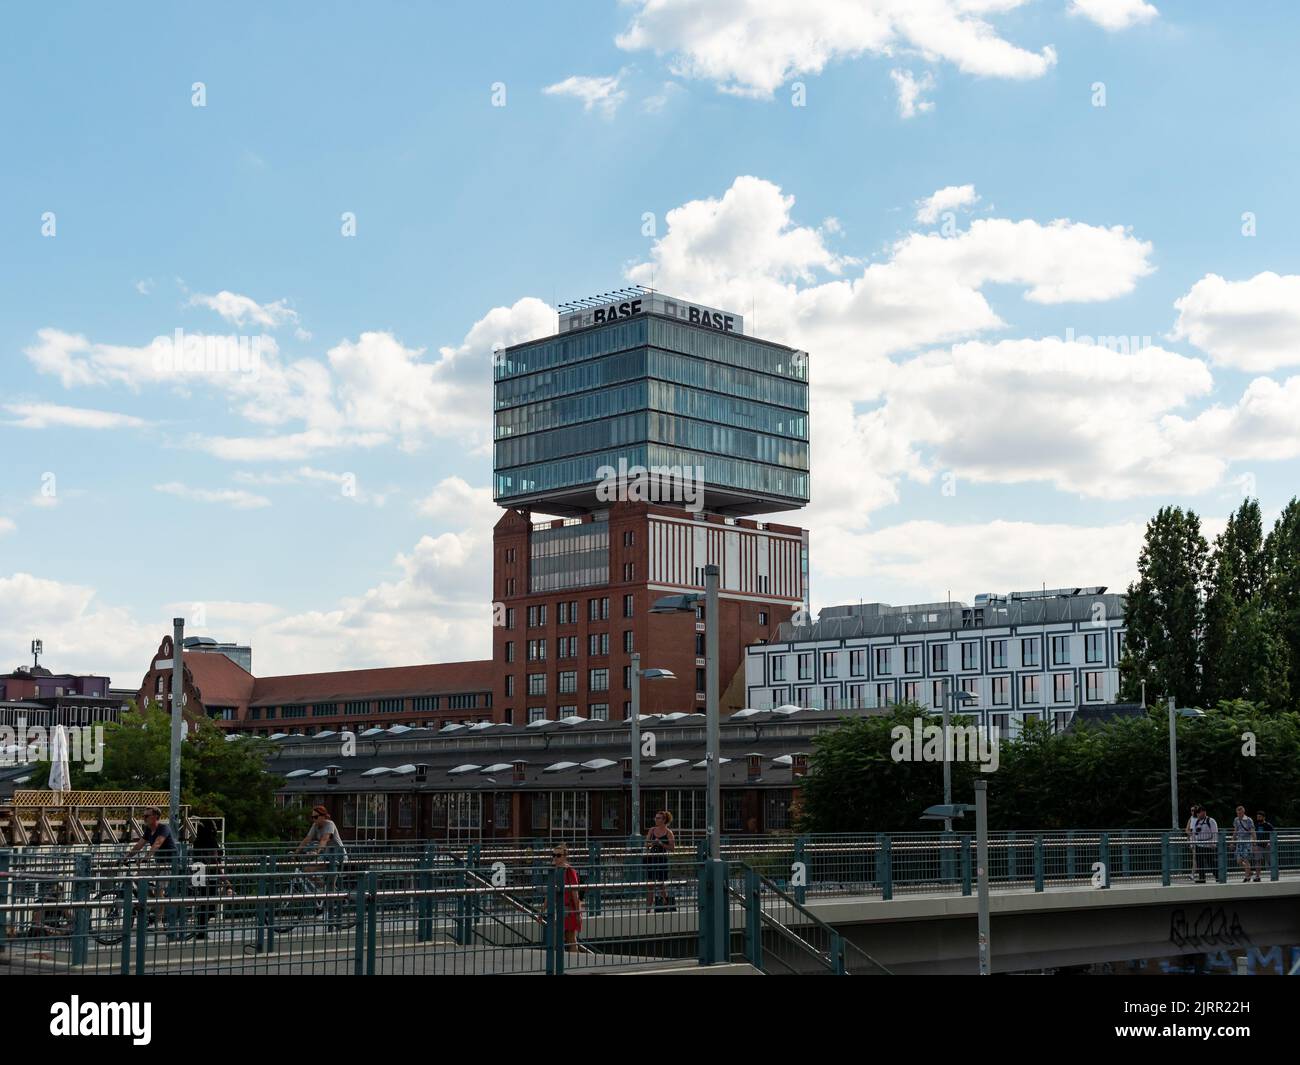 Bürogebäude des Chemieunternehmens BASF in der Stadt Berlin. Moderner Turm in modernem Design mit Logo oben. Architektur mit Glas. Stockfoto